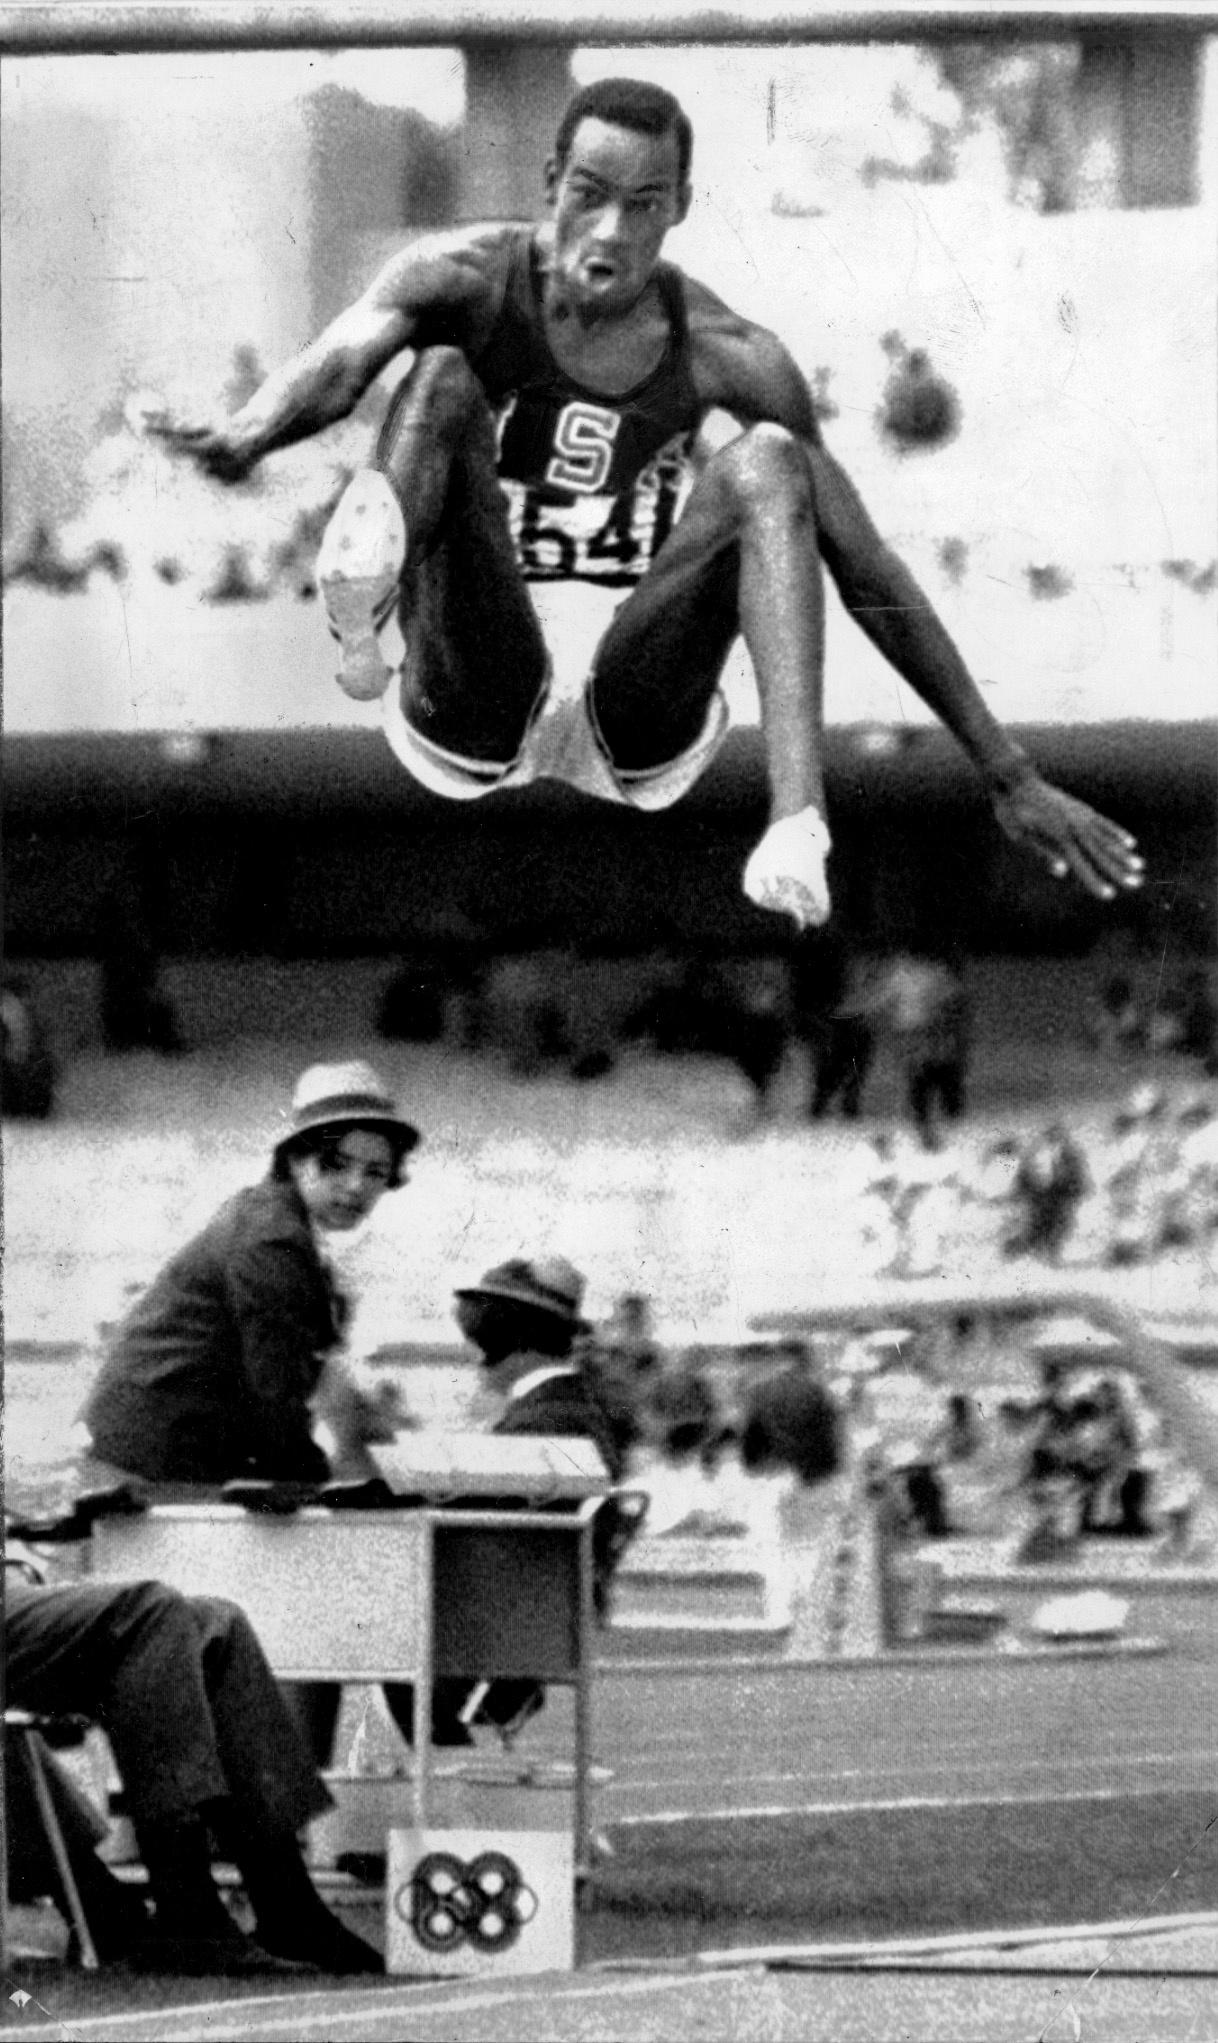 Bob Beamon sätter världsrekord i Mexico City 1968.